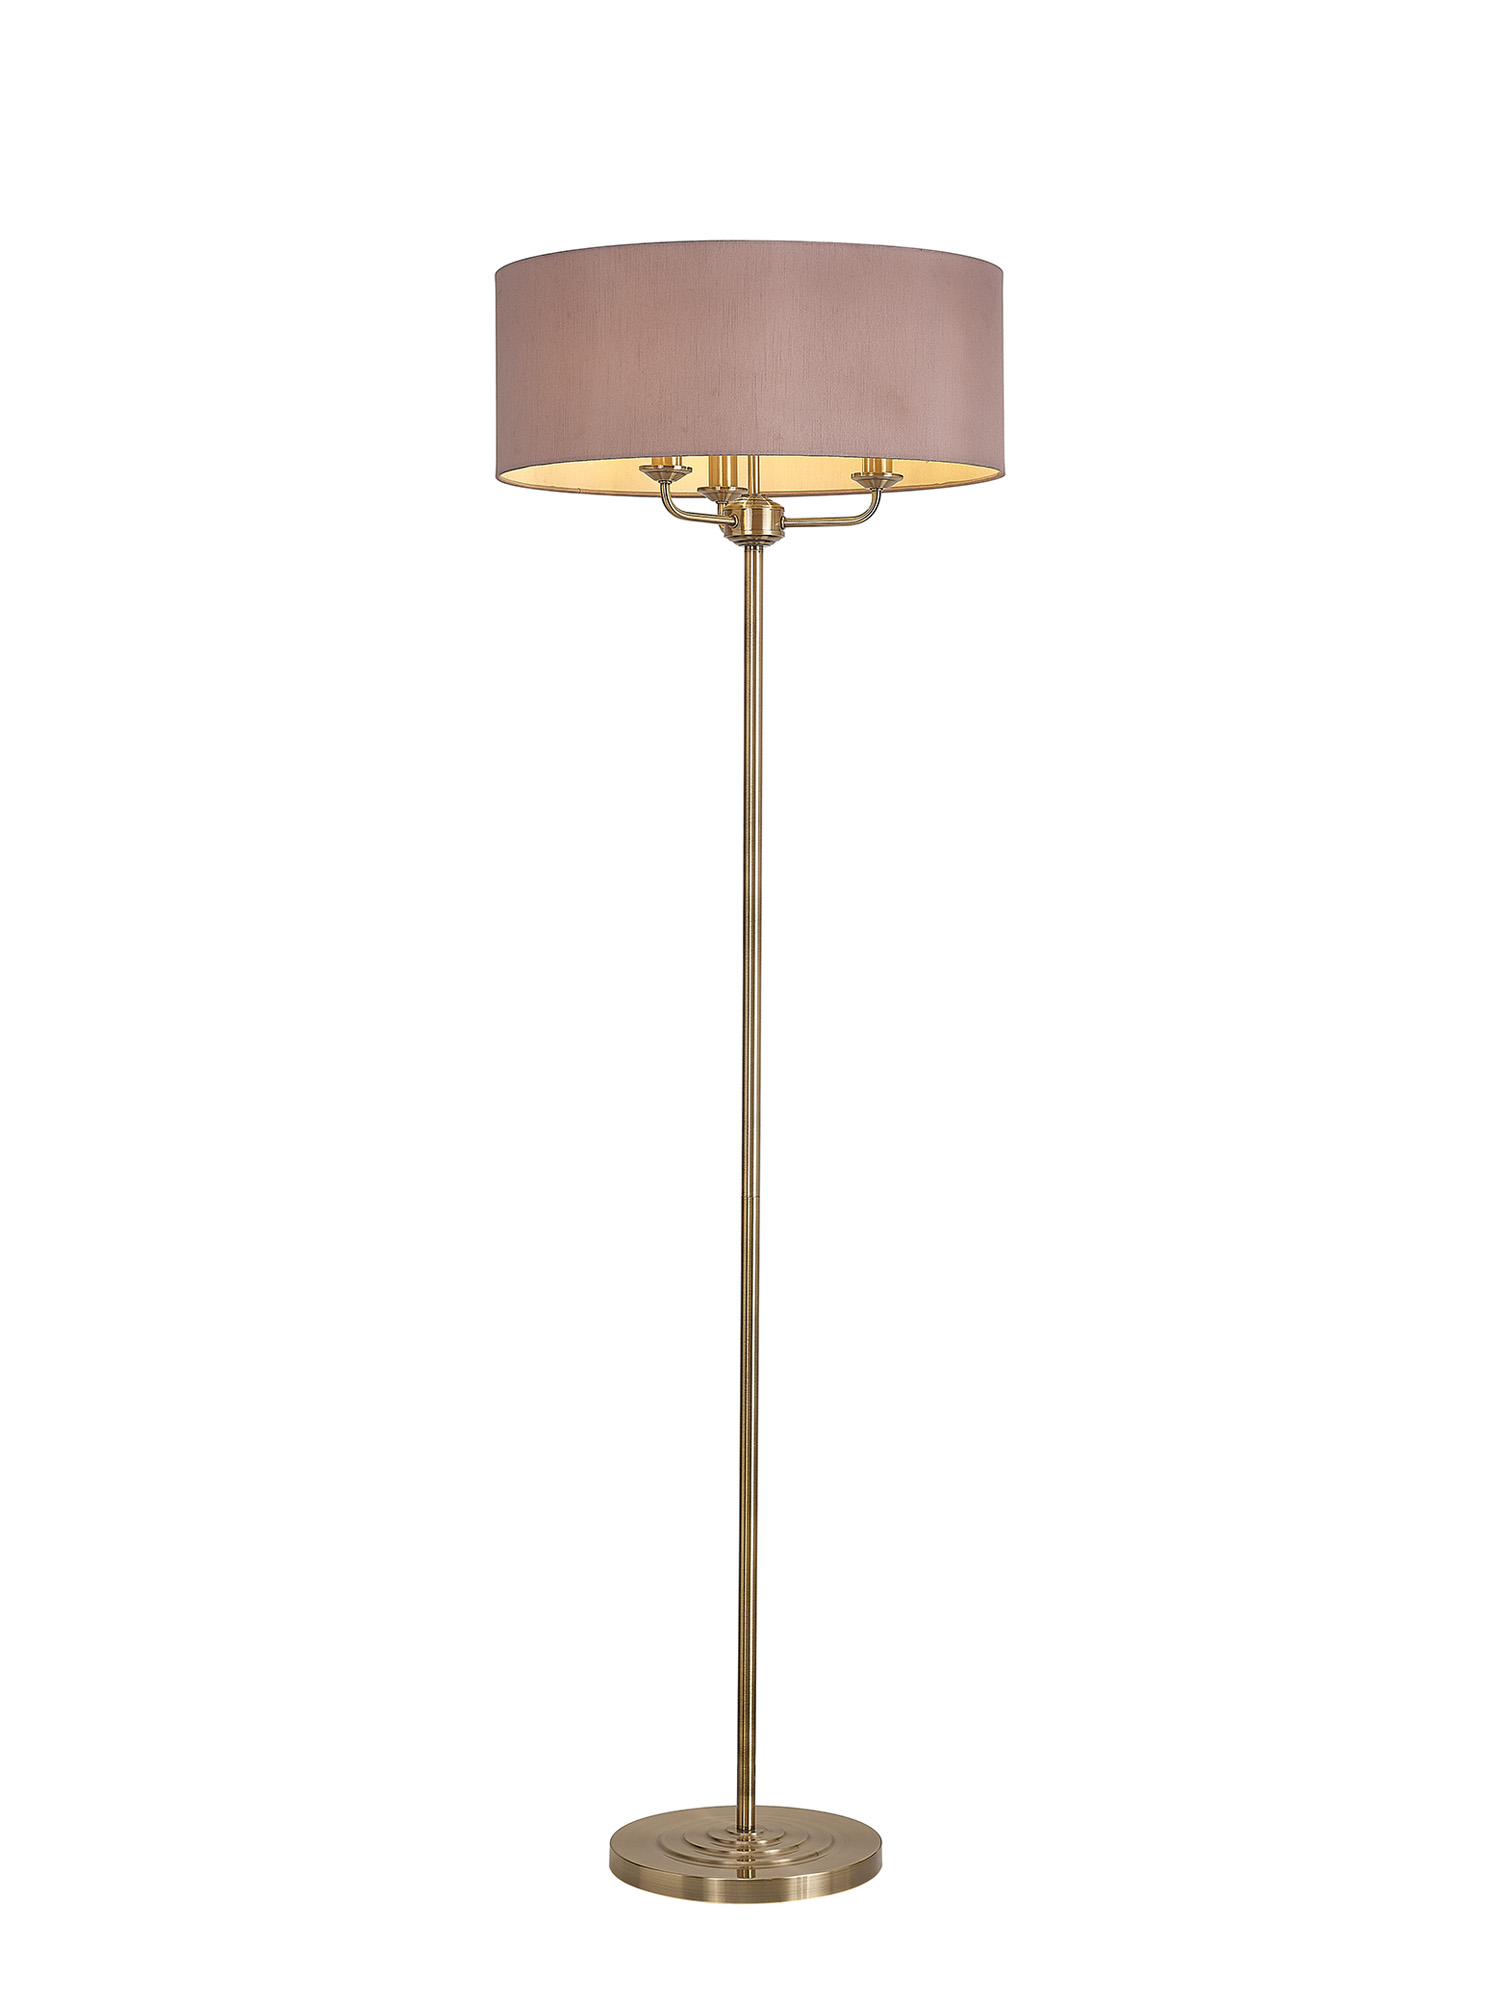 DK0918  Banyan 45cm 3 Light Floor Lamp Antique Brass, Taupe